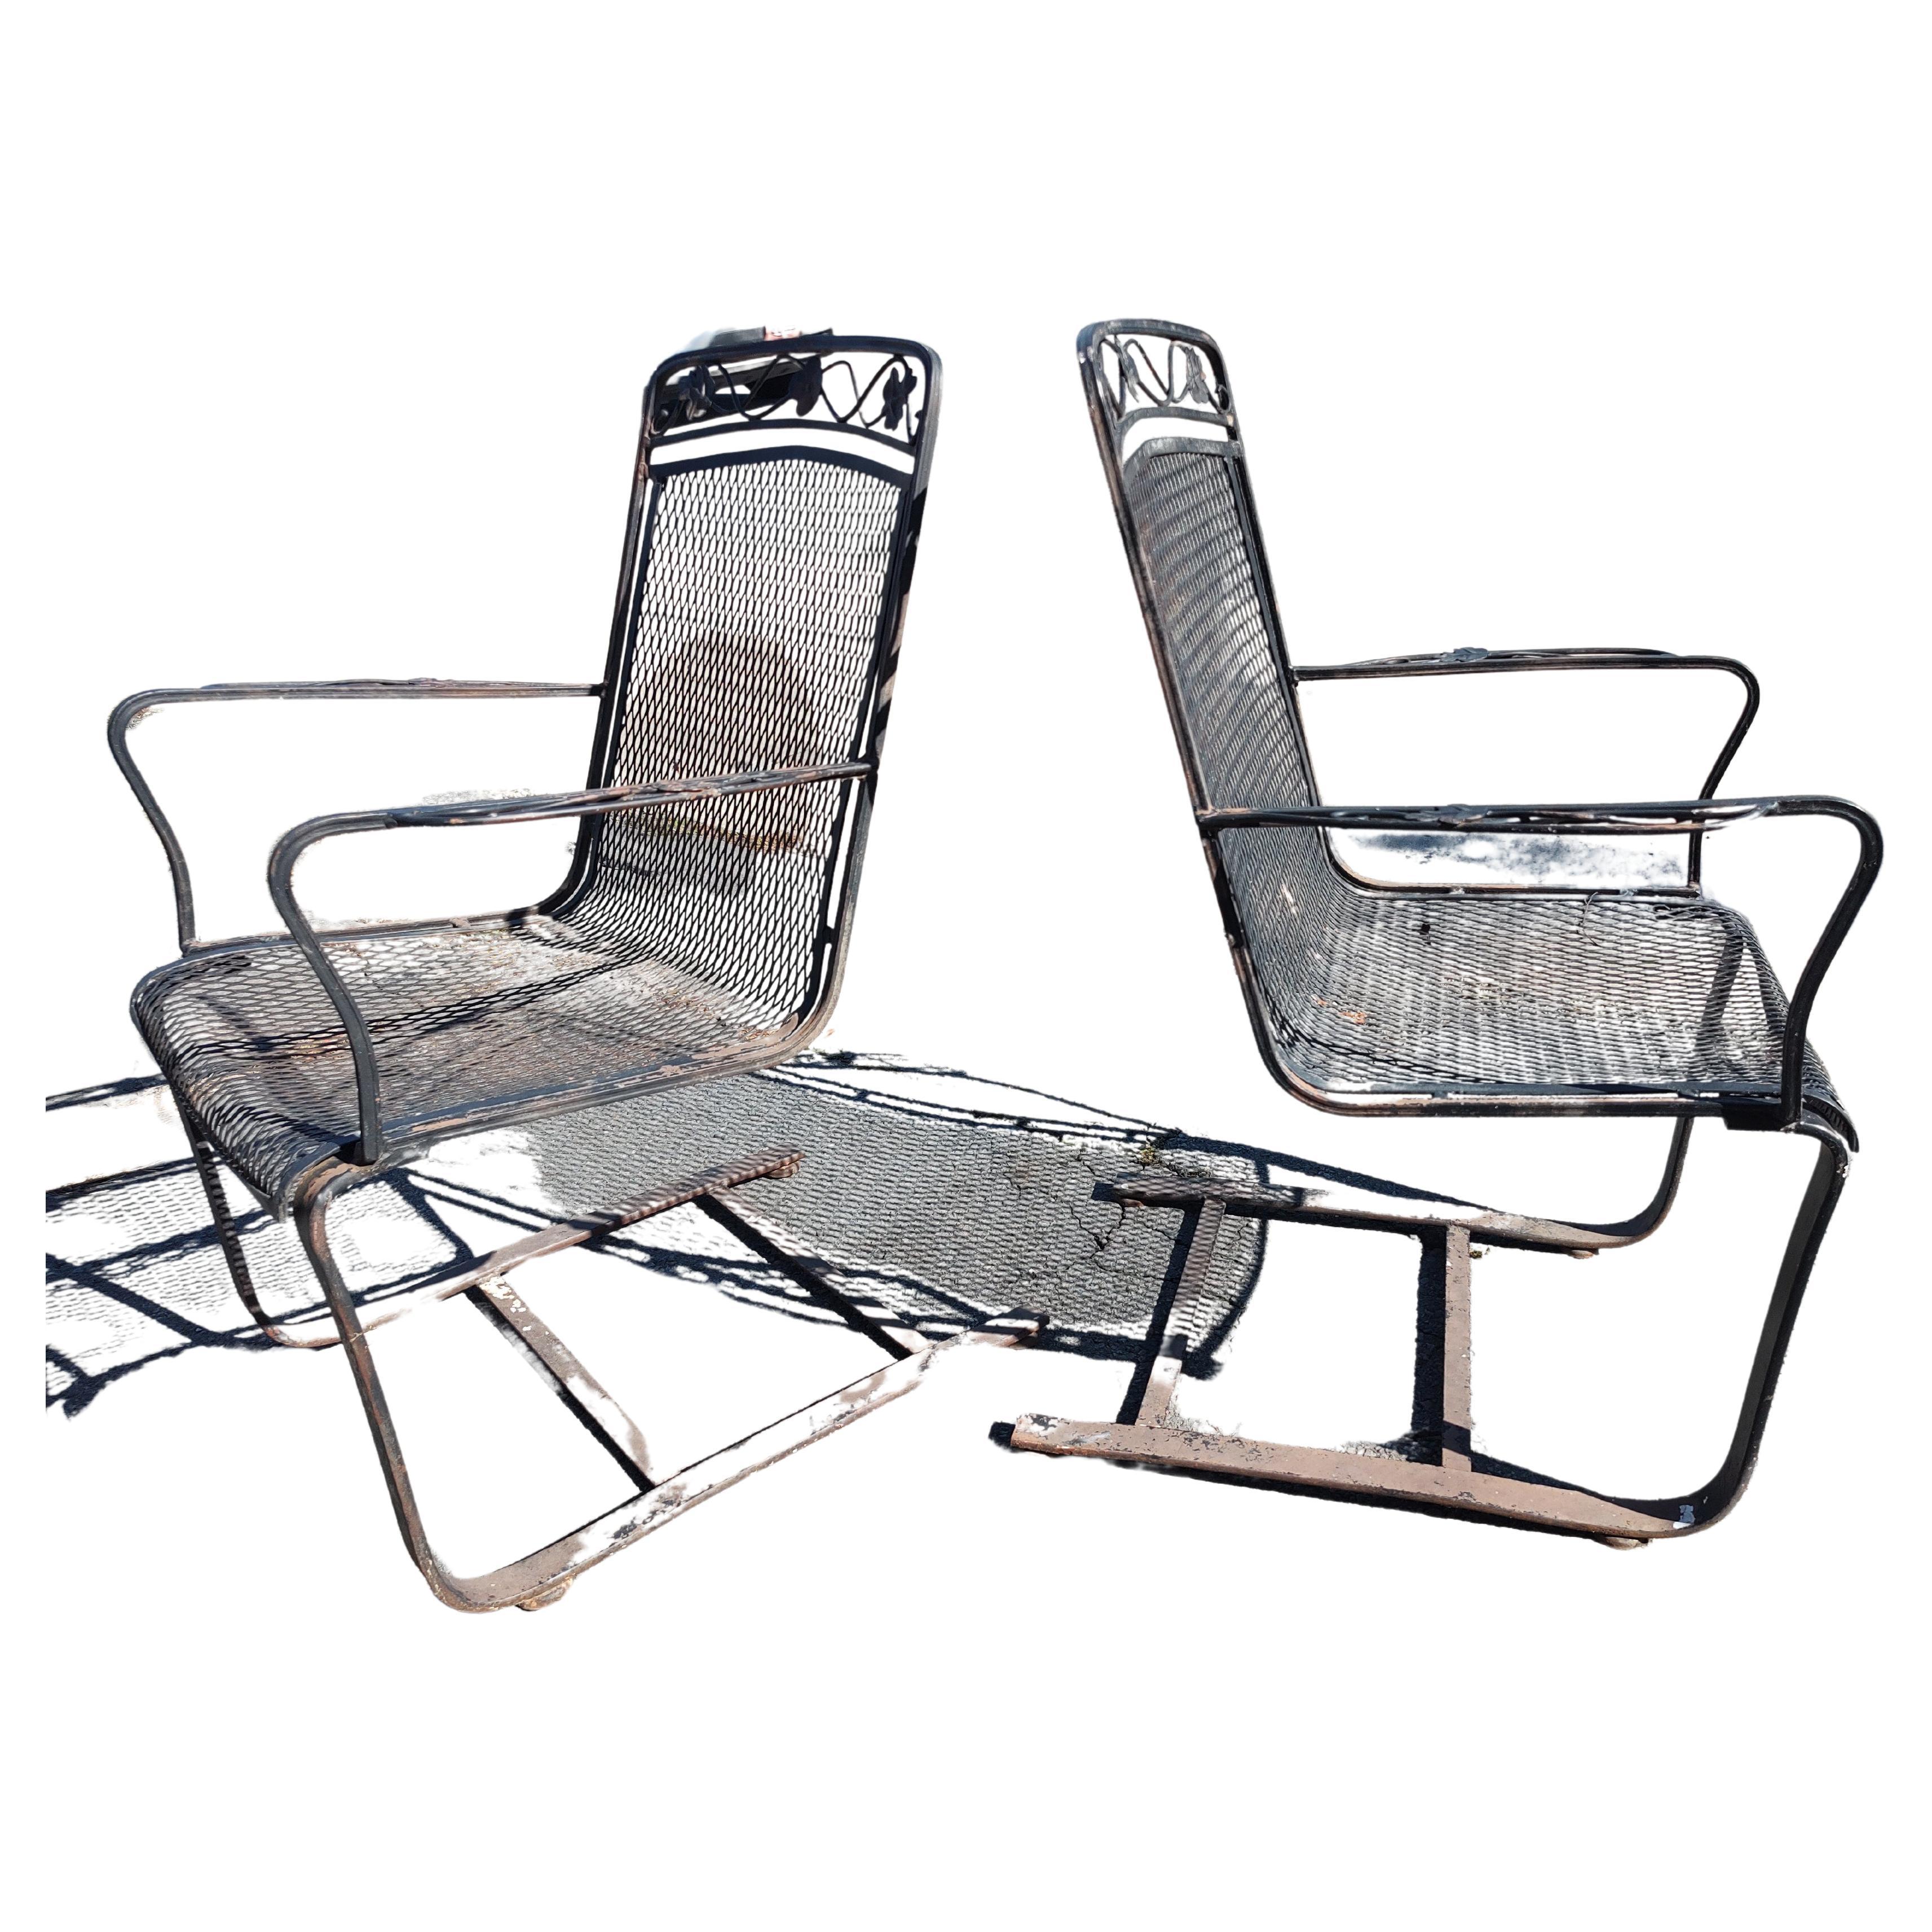 Fantastisches Paar von Mid Century Modern Sculptural Iron freitragende Lounge-Stühle in alten schwarzen Farbe c1960. Sie sind sehr bequem, da sie eine federnde Beweglichkeit haben, da sie freitragend sind und die Stühle sich entsprechend